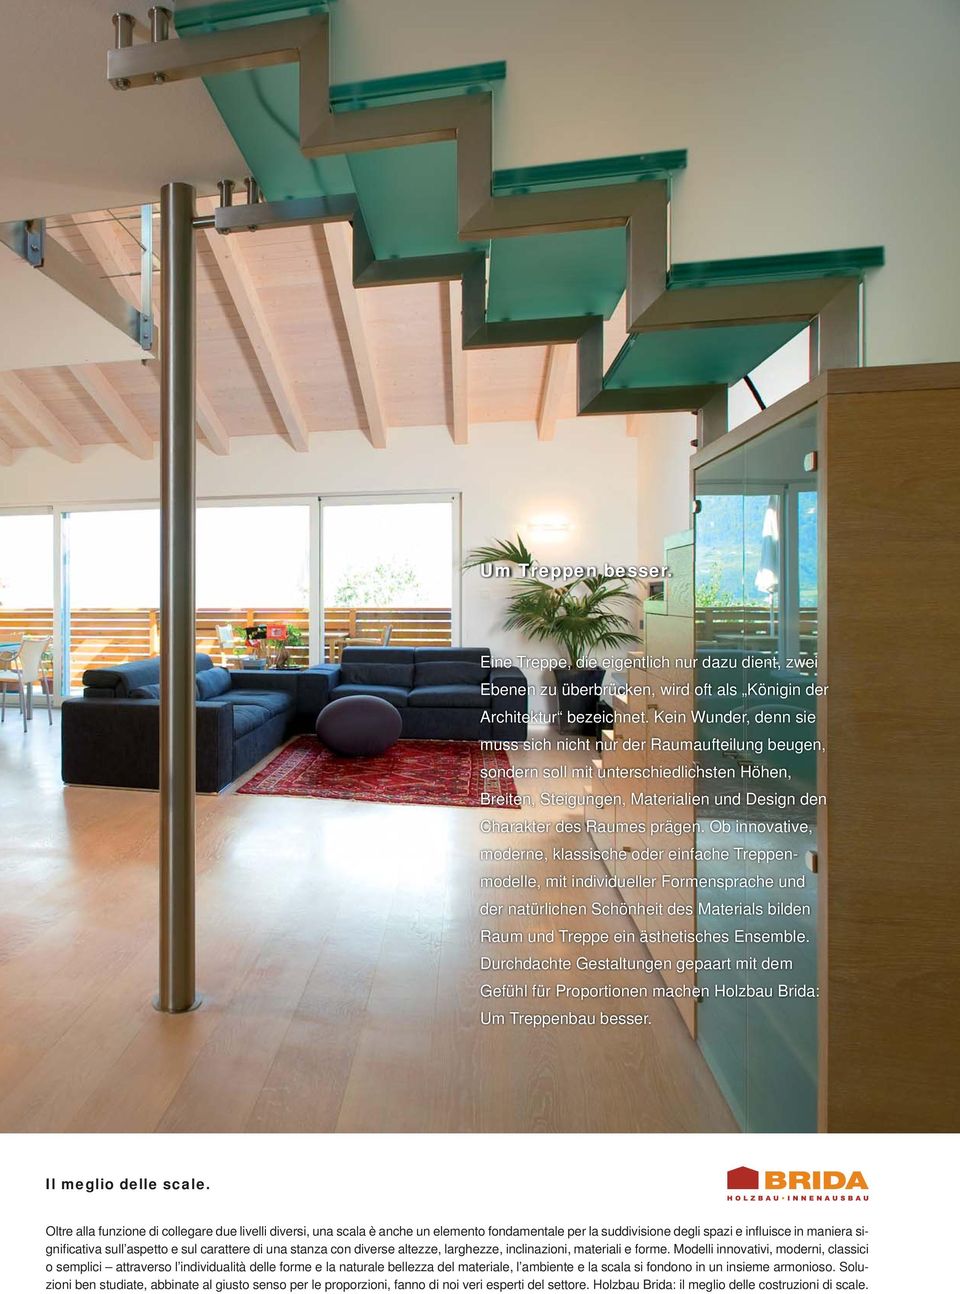 Ob innovative, moderne, klassische oder einfache Treppenmodelle, mit individueller Formensprache und der natürlichen Schönheit des Materials bilden Raum und Treppe ein ästhetisches Ensemble.